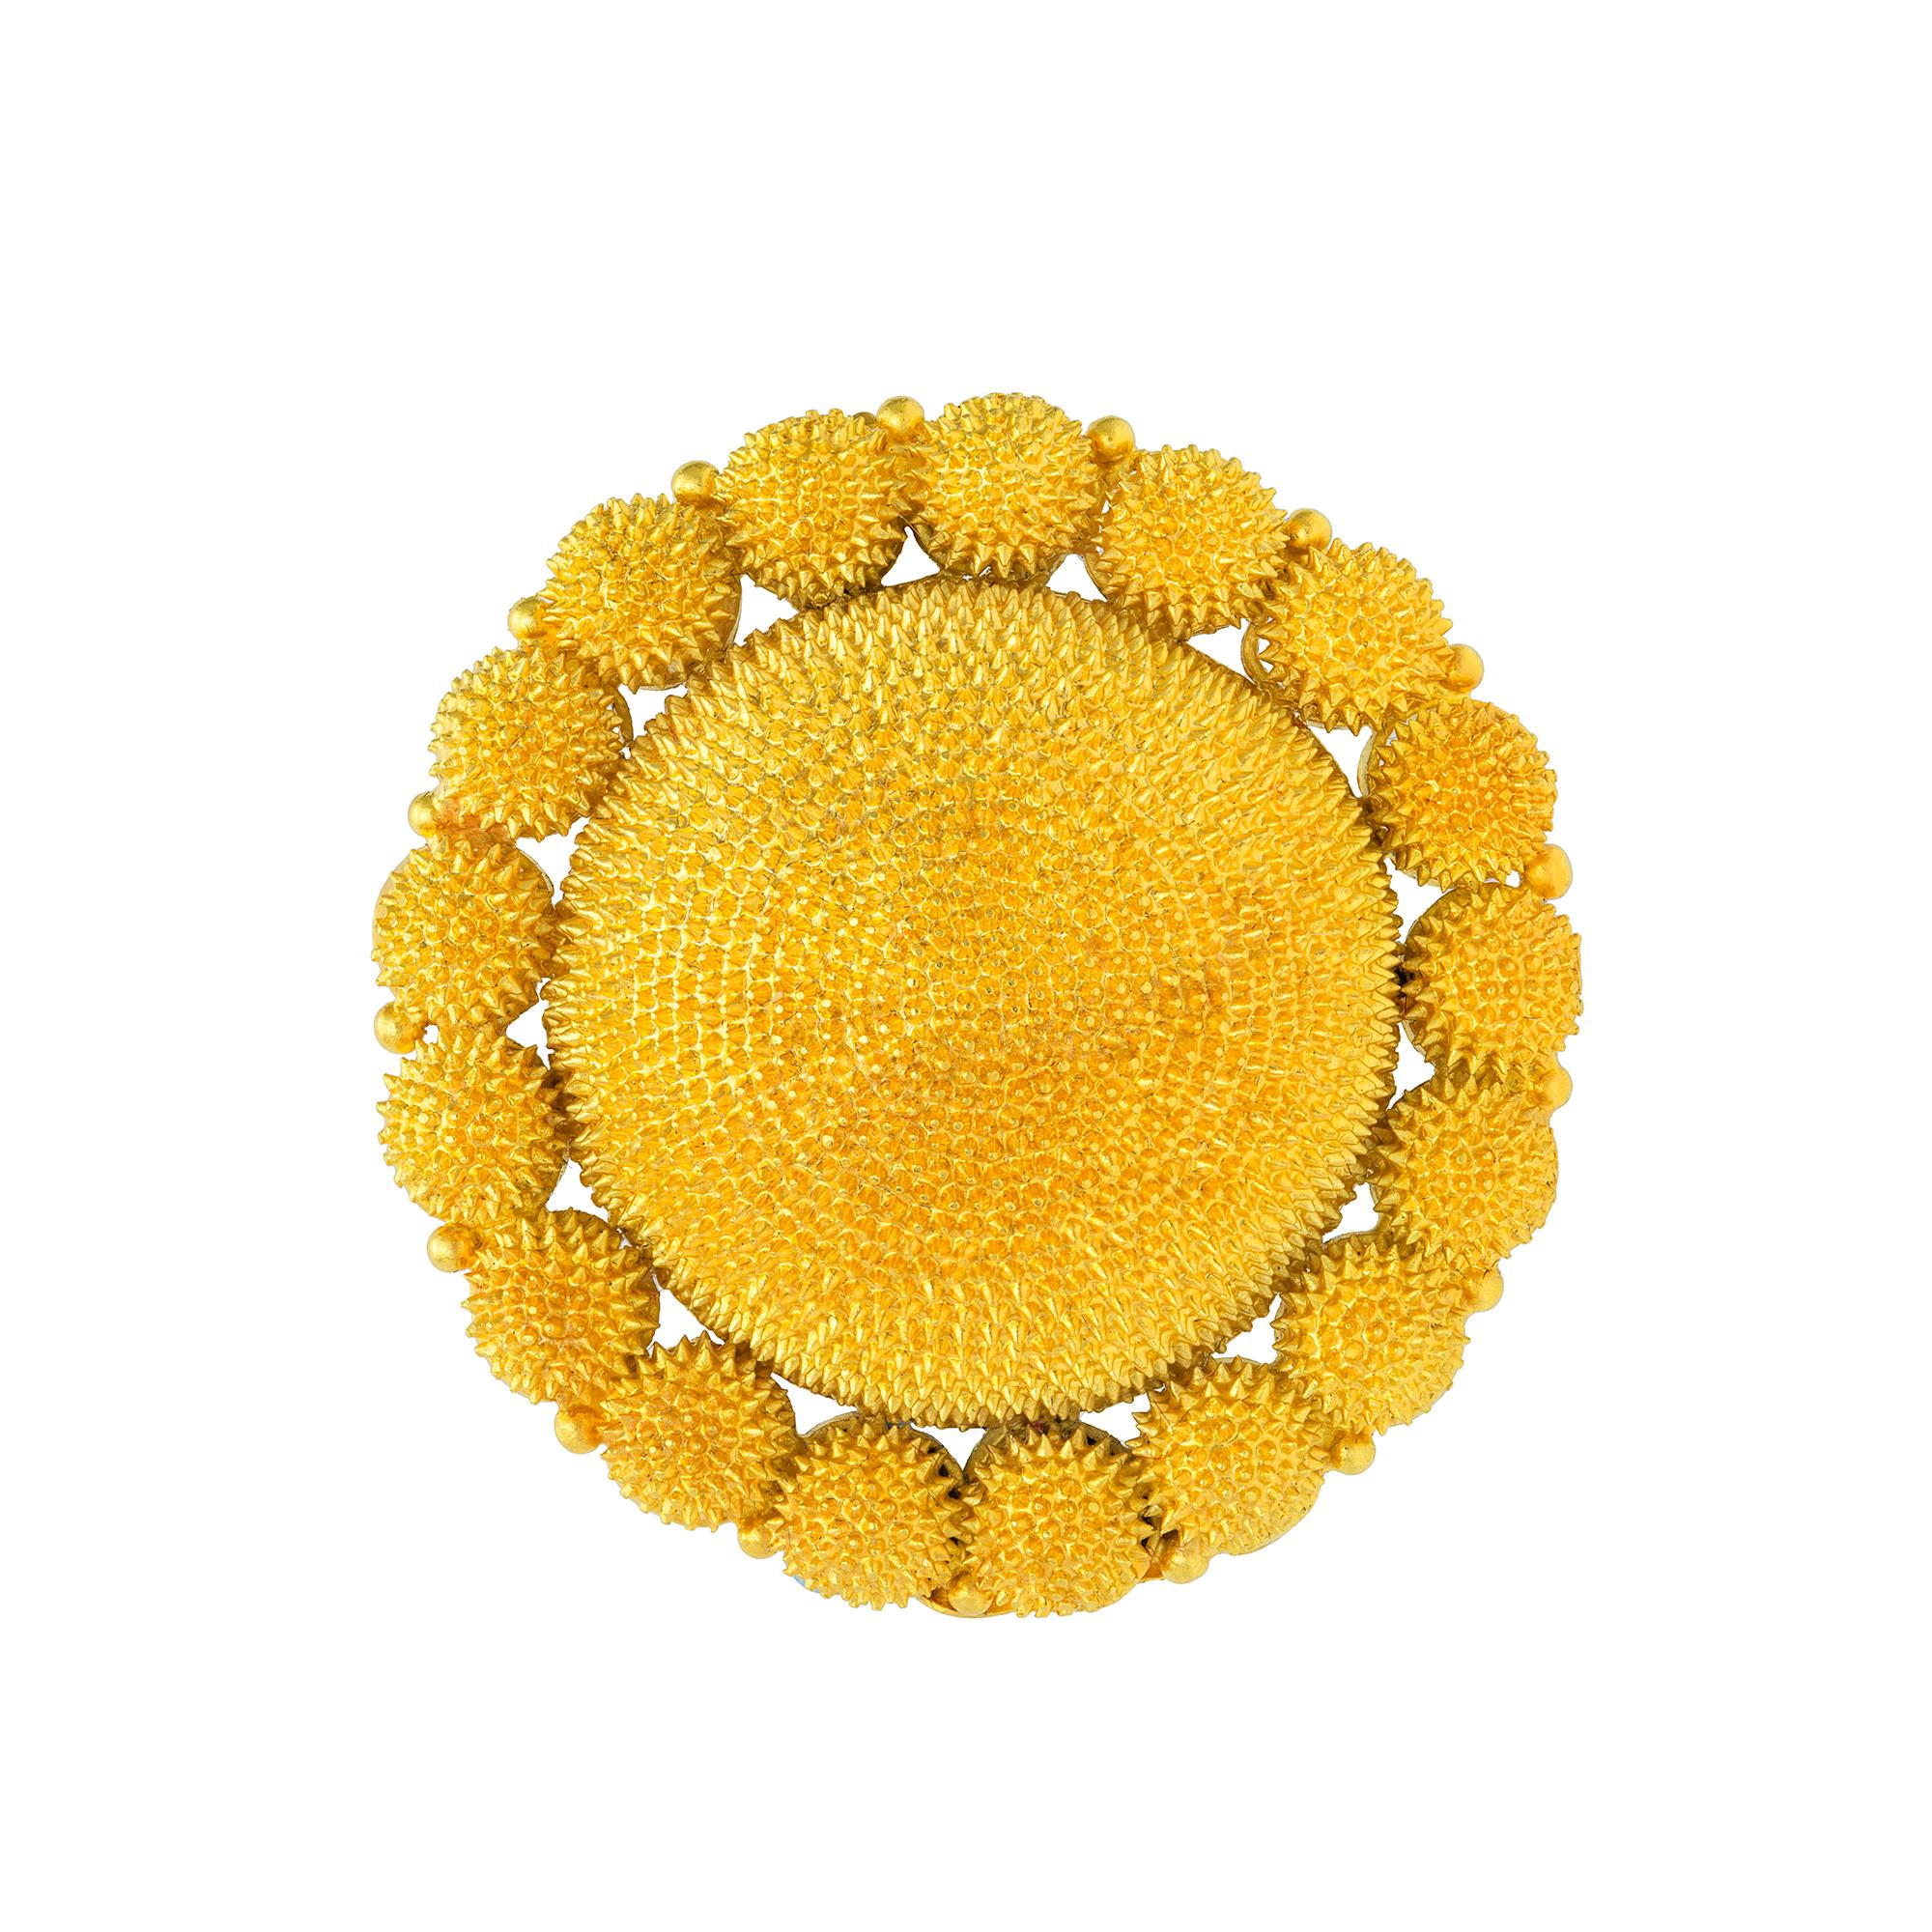 Eine anglo-indische Demi-Parure aus Gelbgold mit feiner Kegelarbeit, bestehend aus einer Brosche und einem Paar tropfenförmiger Ohrringe. Die kreisförmige Brosche hat eine zentrale Kuppel, die von siebzehn Halbkugeln und Perlenverzierungen umgeben